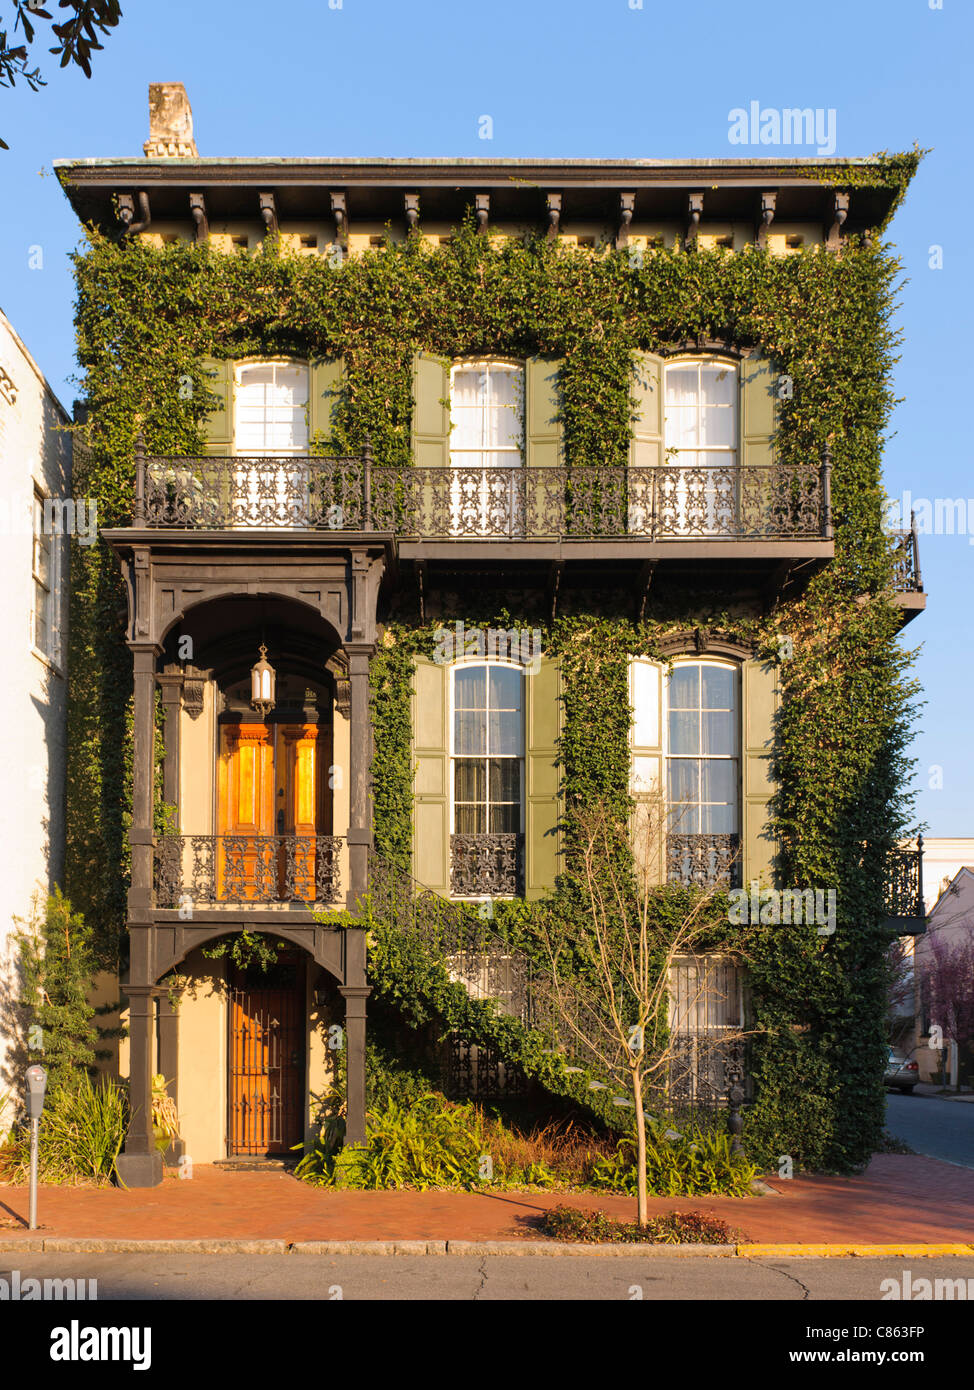 Una casa en el distrito histórico de Savannah, Foto de stock